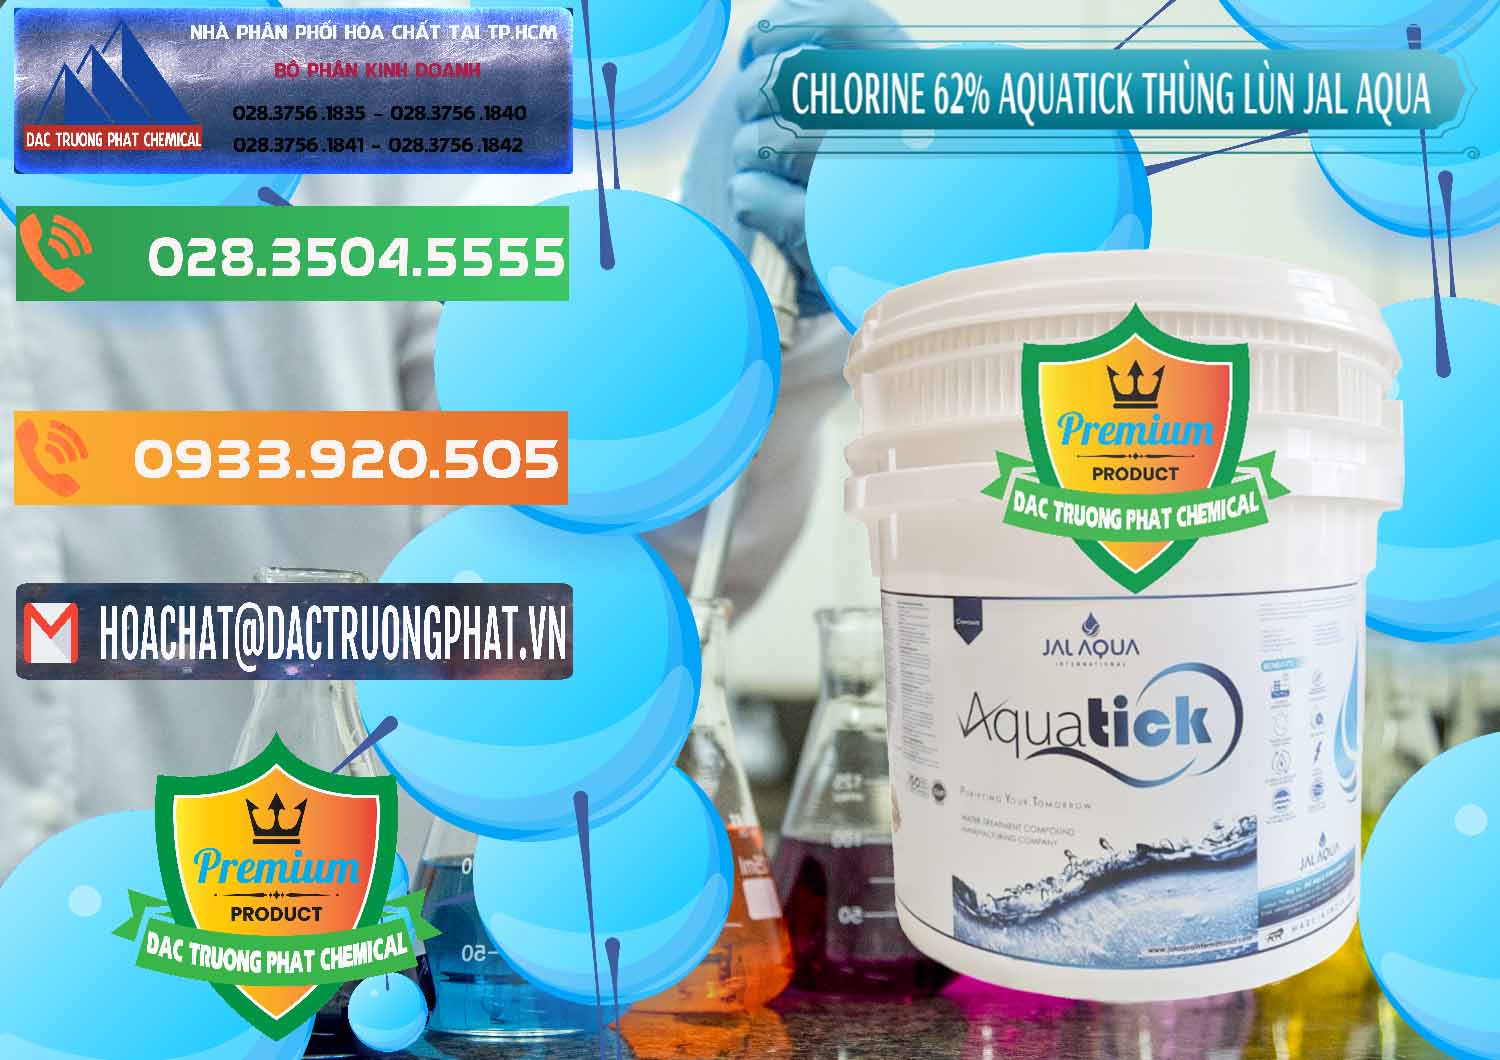 Nơi kinh doanh & bán Chlorine – Clorin 62% Aquatick Thùng Lùn Jal Aqua Ấn Độ India - 0238 - Nơi phân phối - cung cấp hóa chất tại TP.HCM - hoachatxulynuoc.com.vn